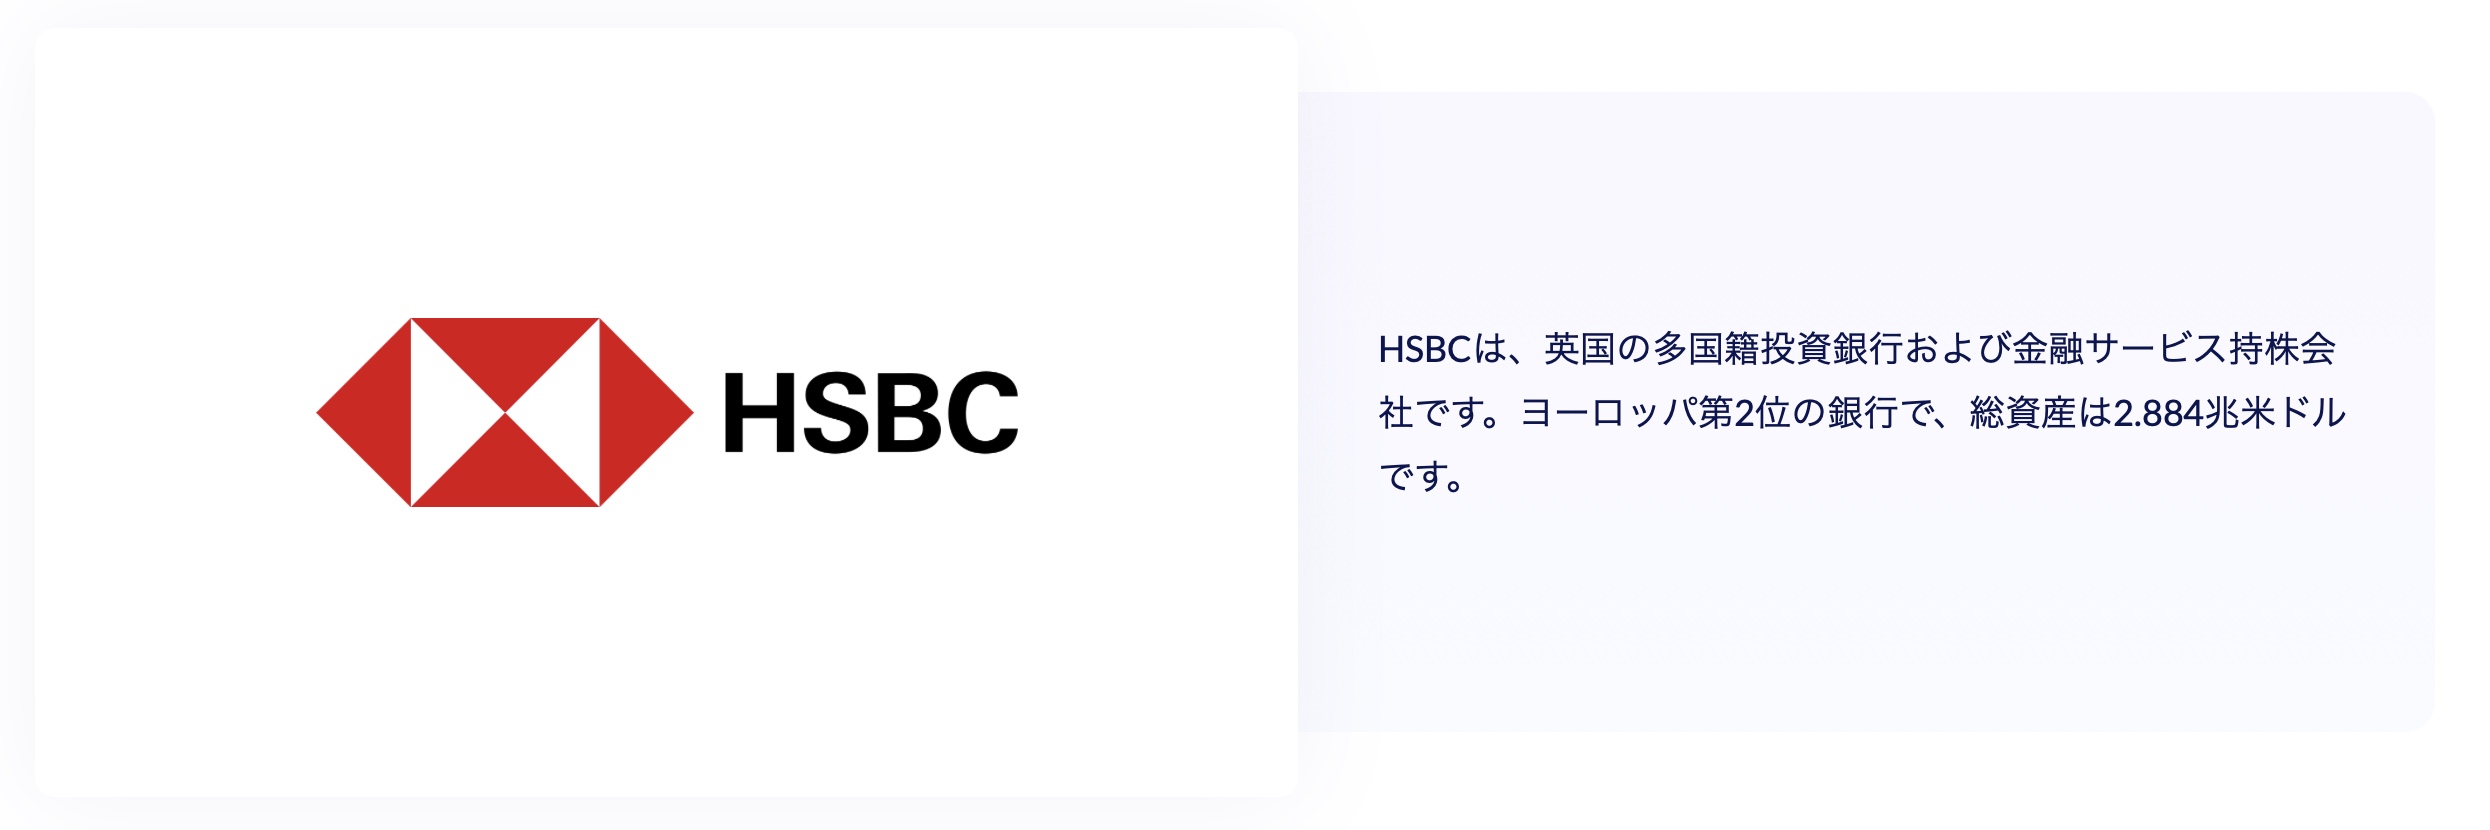 ティア1銀行_HSBC